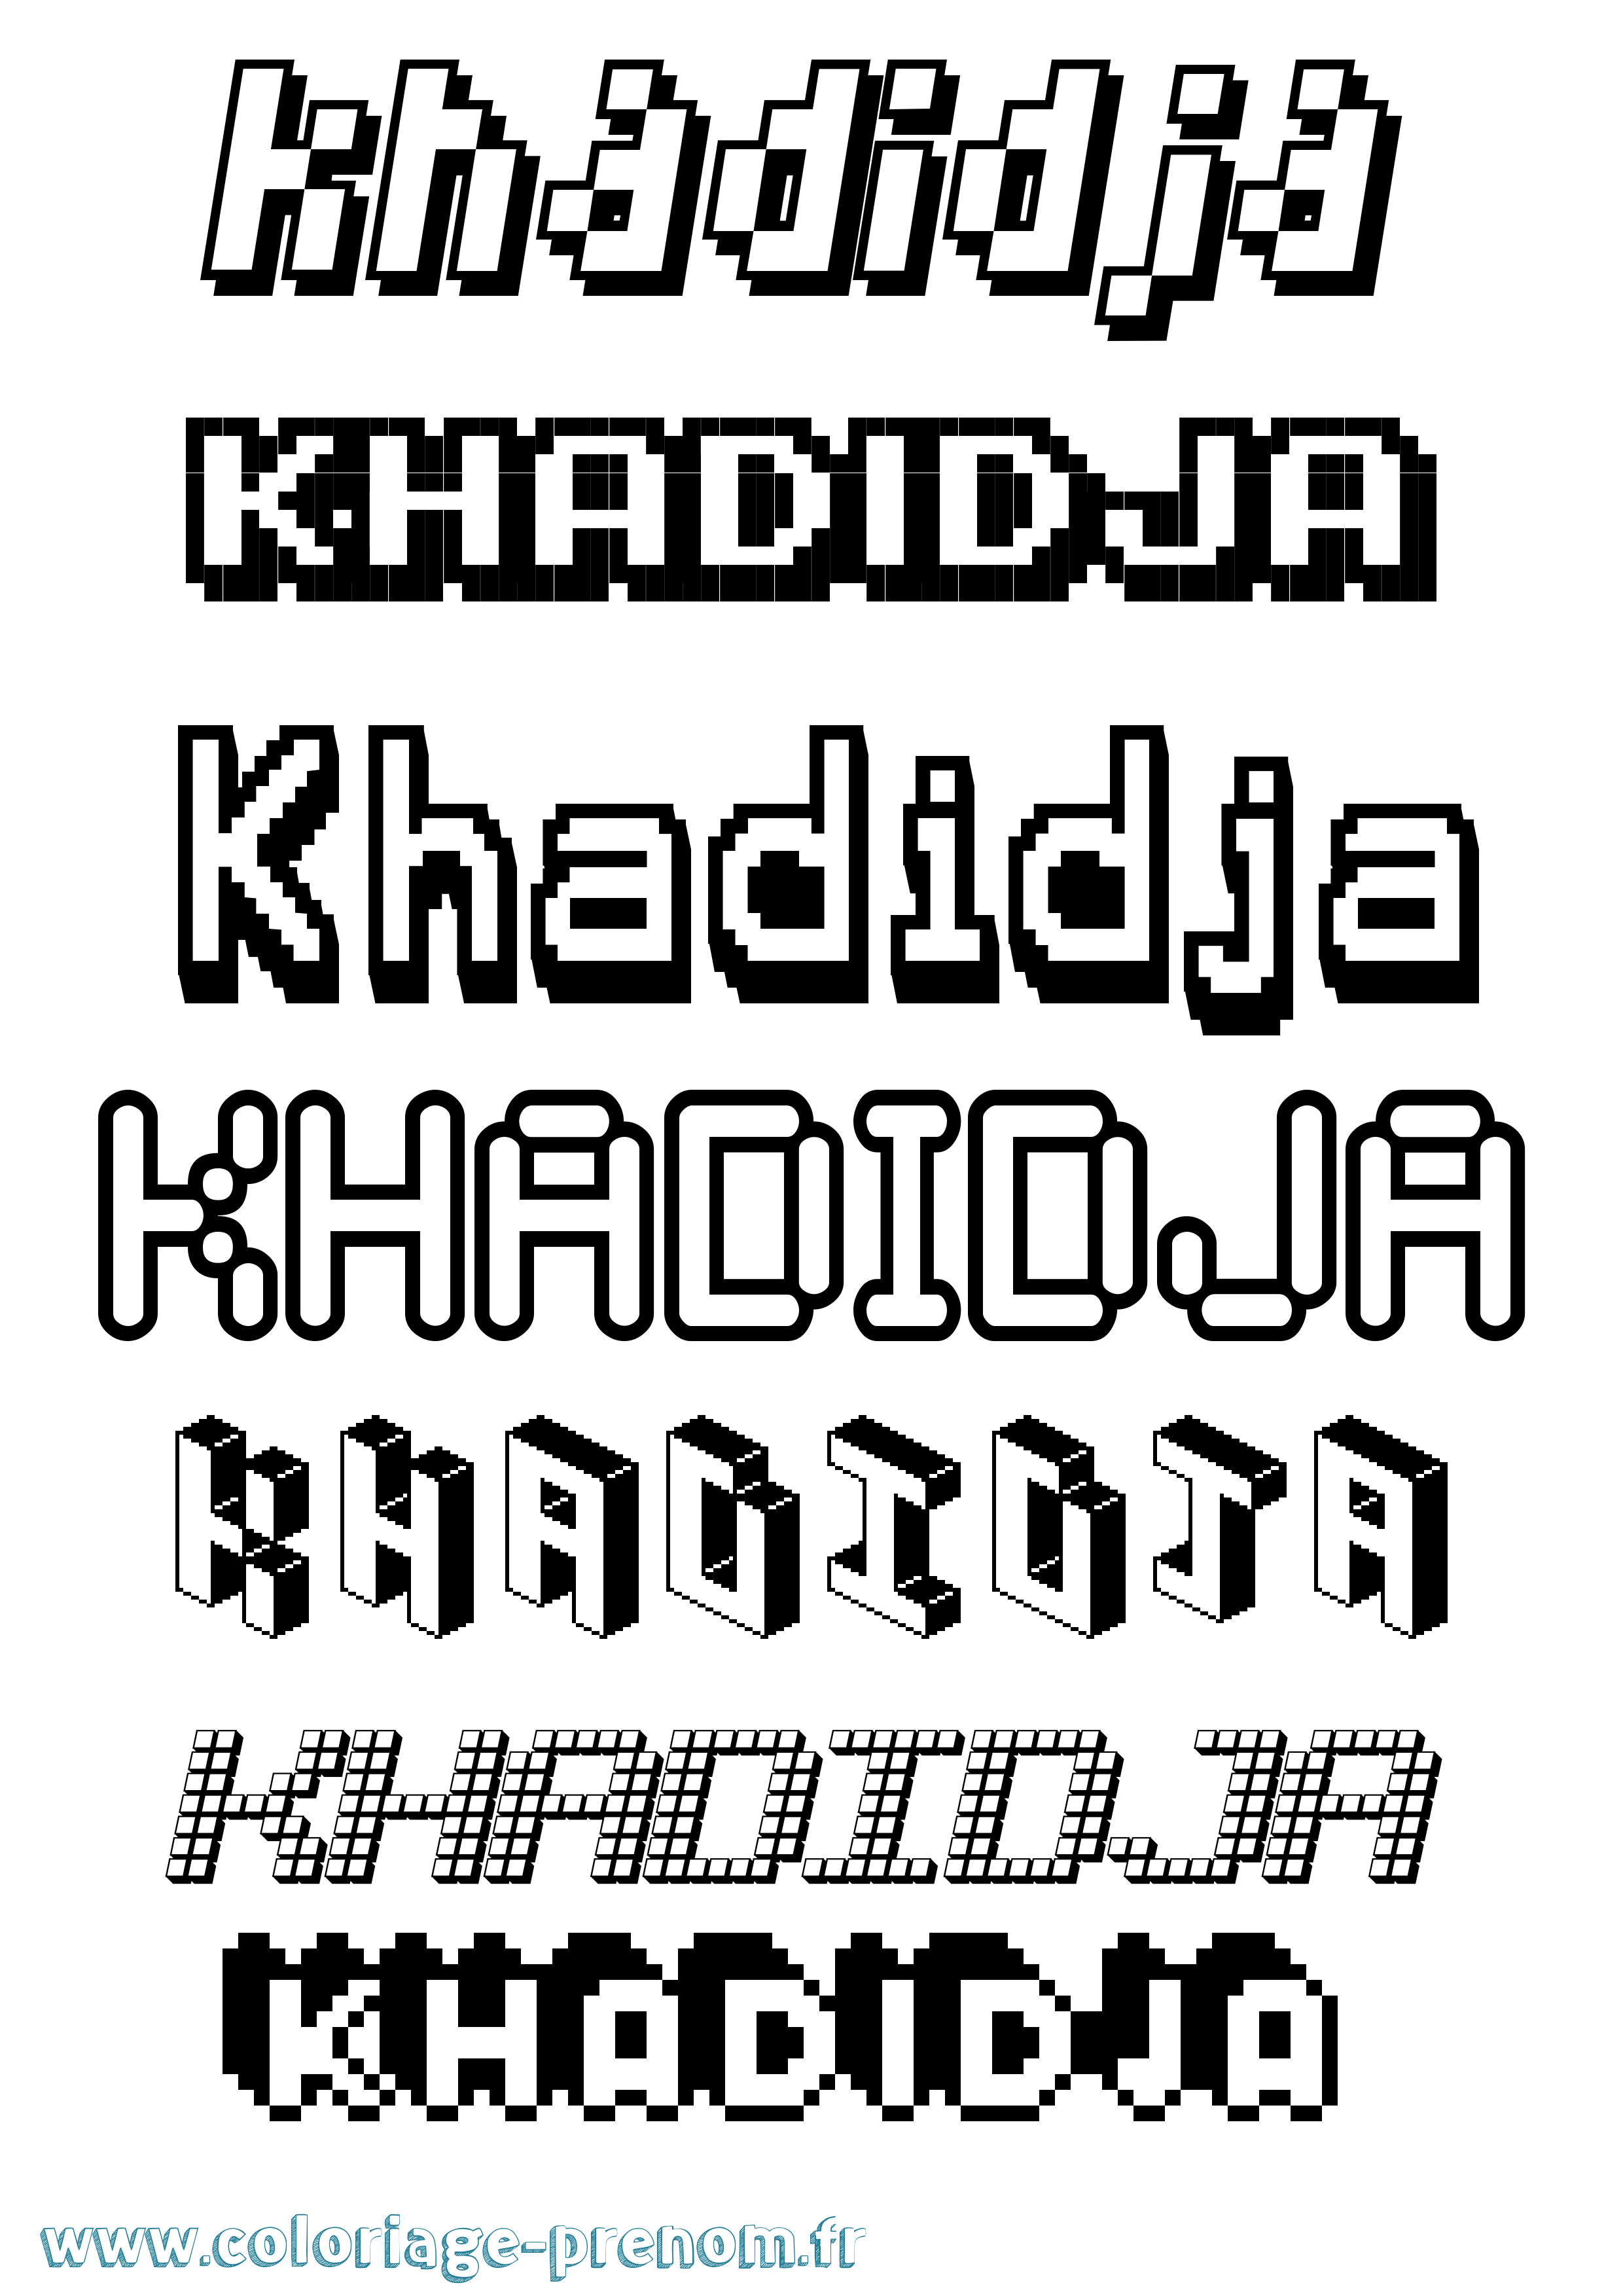 Coloriage prénom Khadidja Pixel